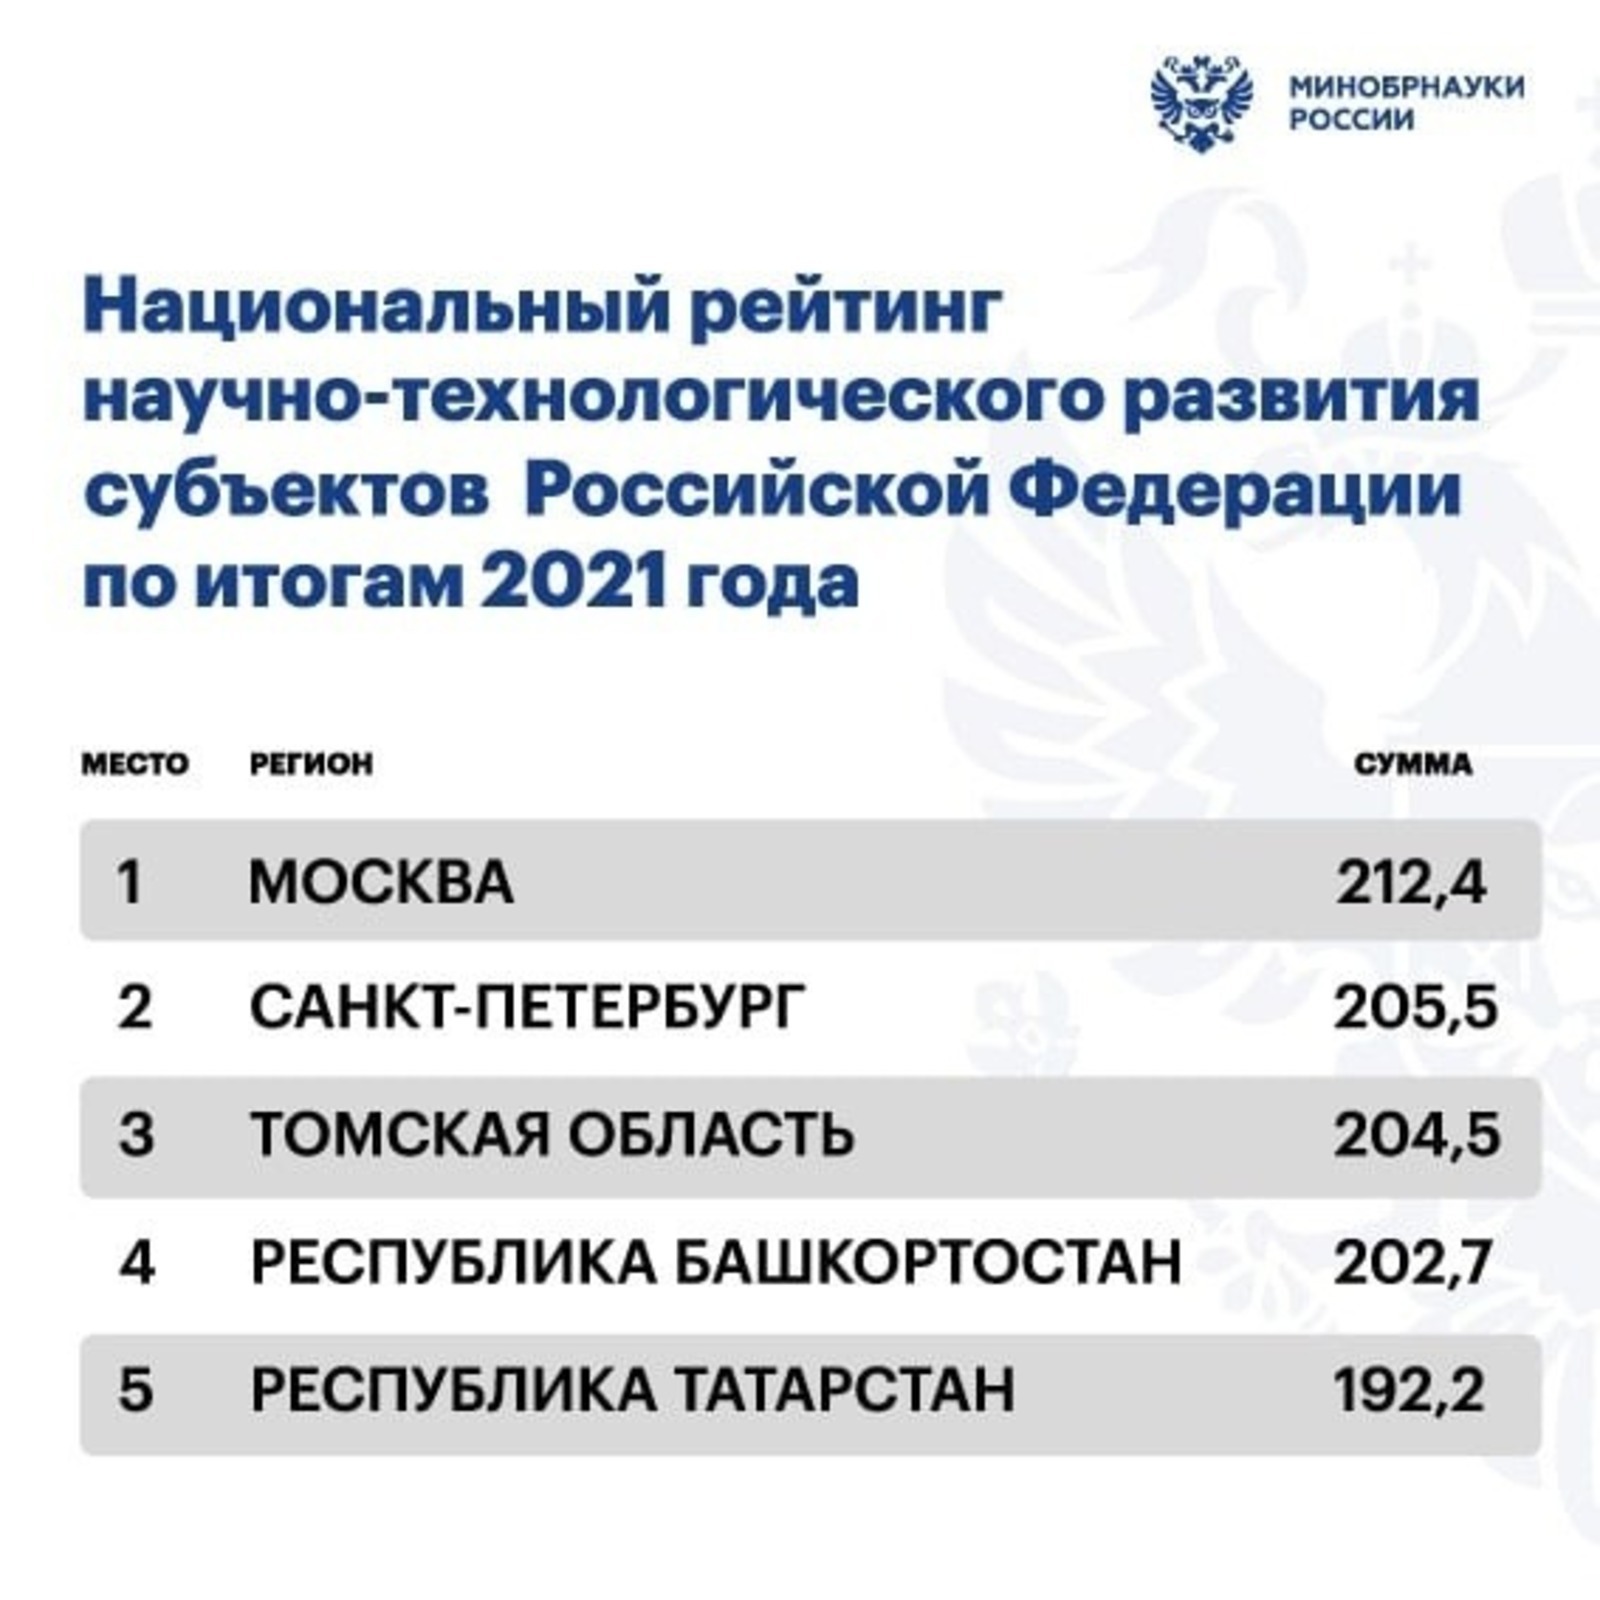 Башкирия заняла 4 место в I Национальном рейтинге научно-технологического развития регионов